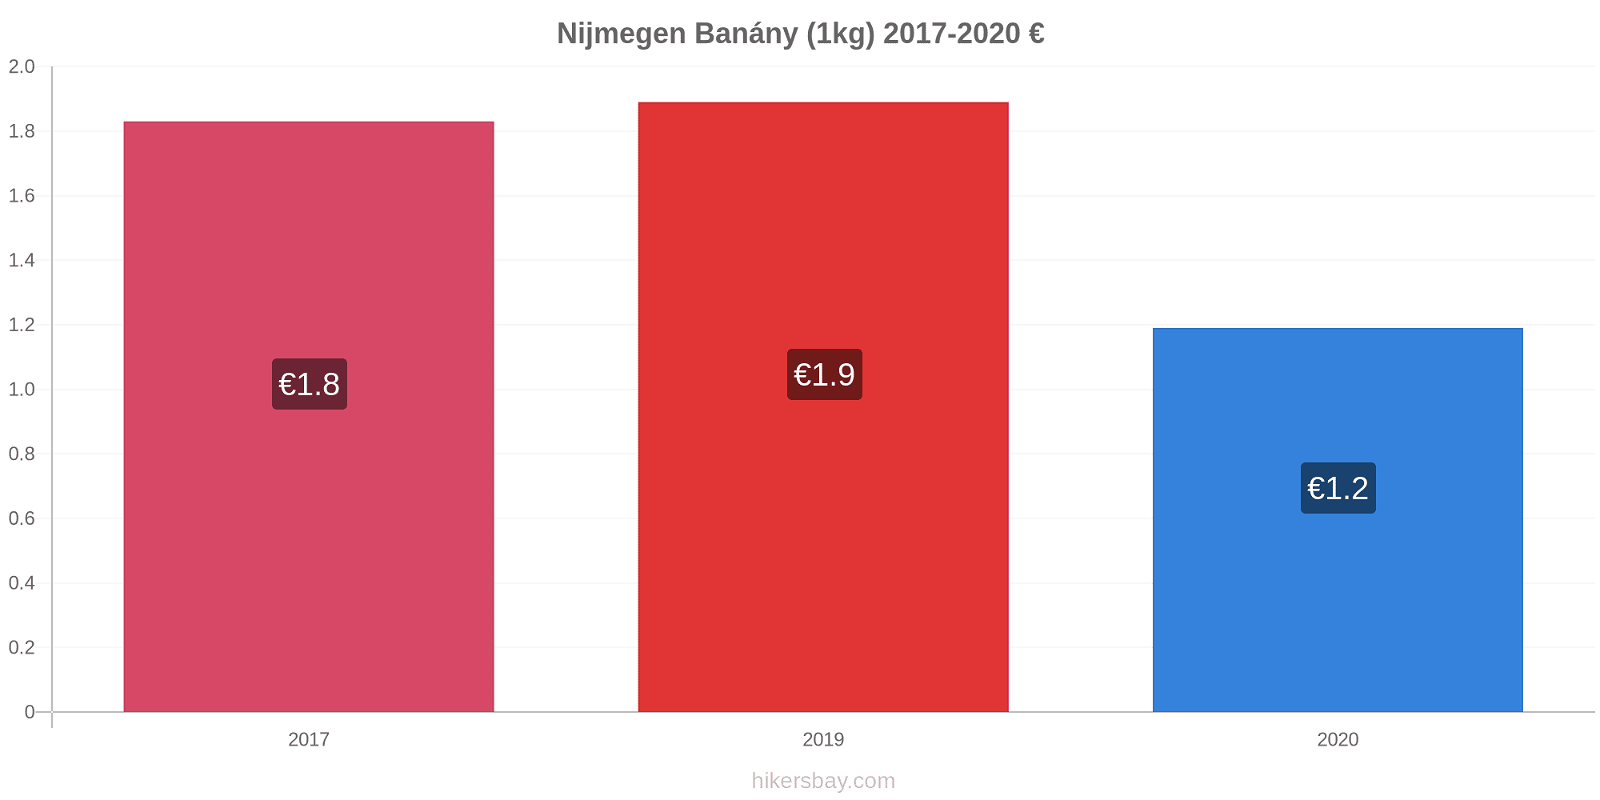 Nijmegen změny cen Banány (1kg) hikersbay.com